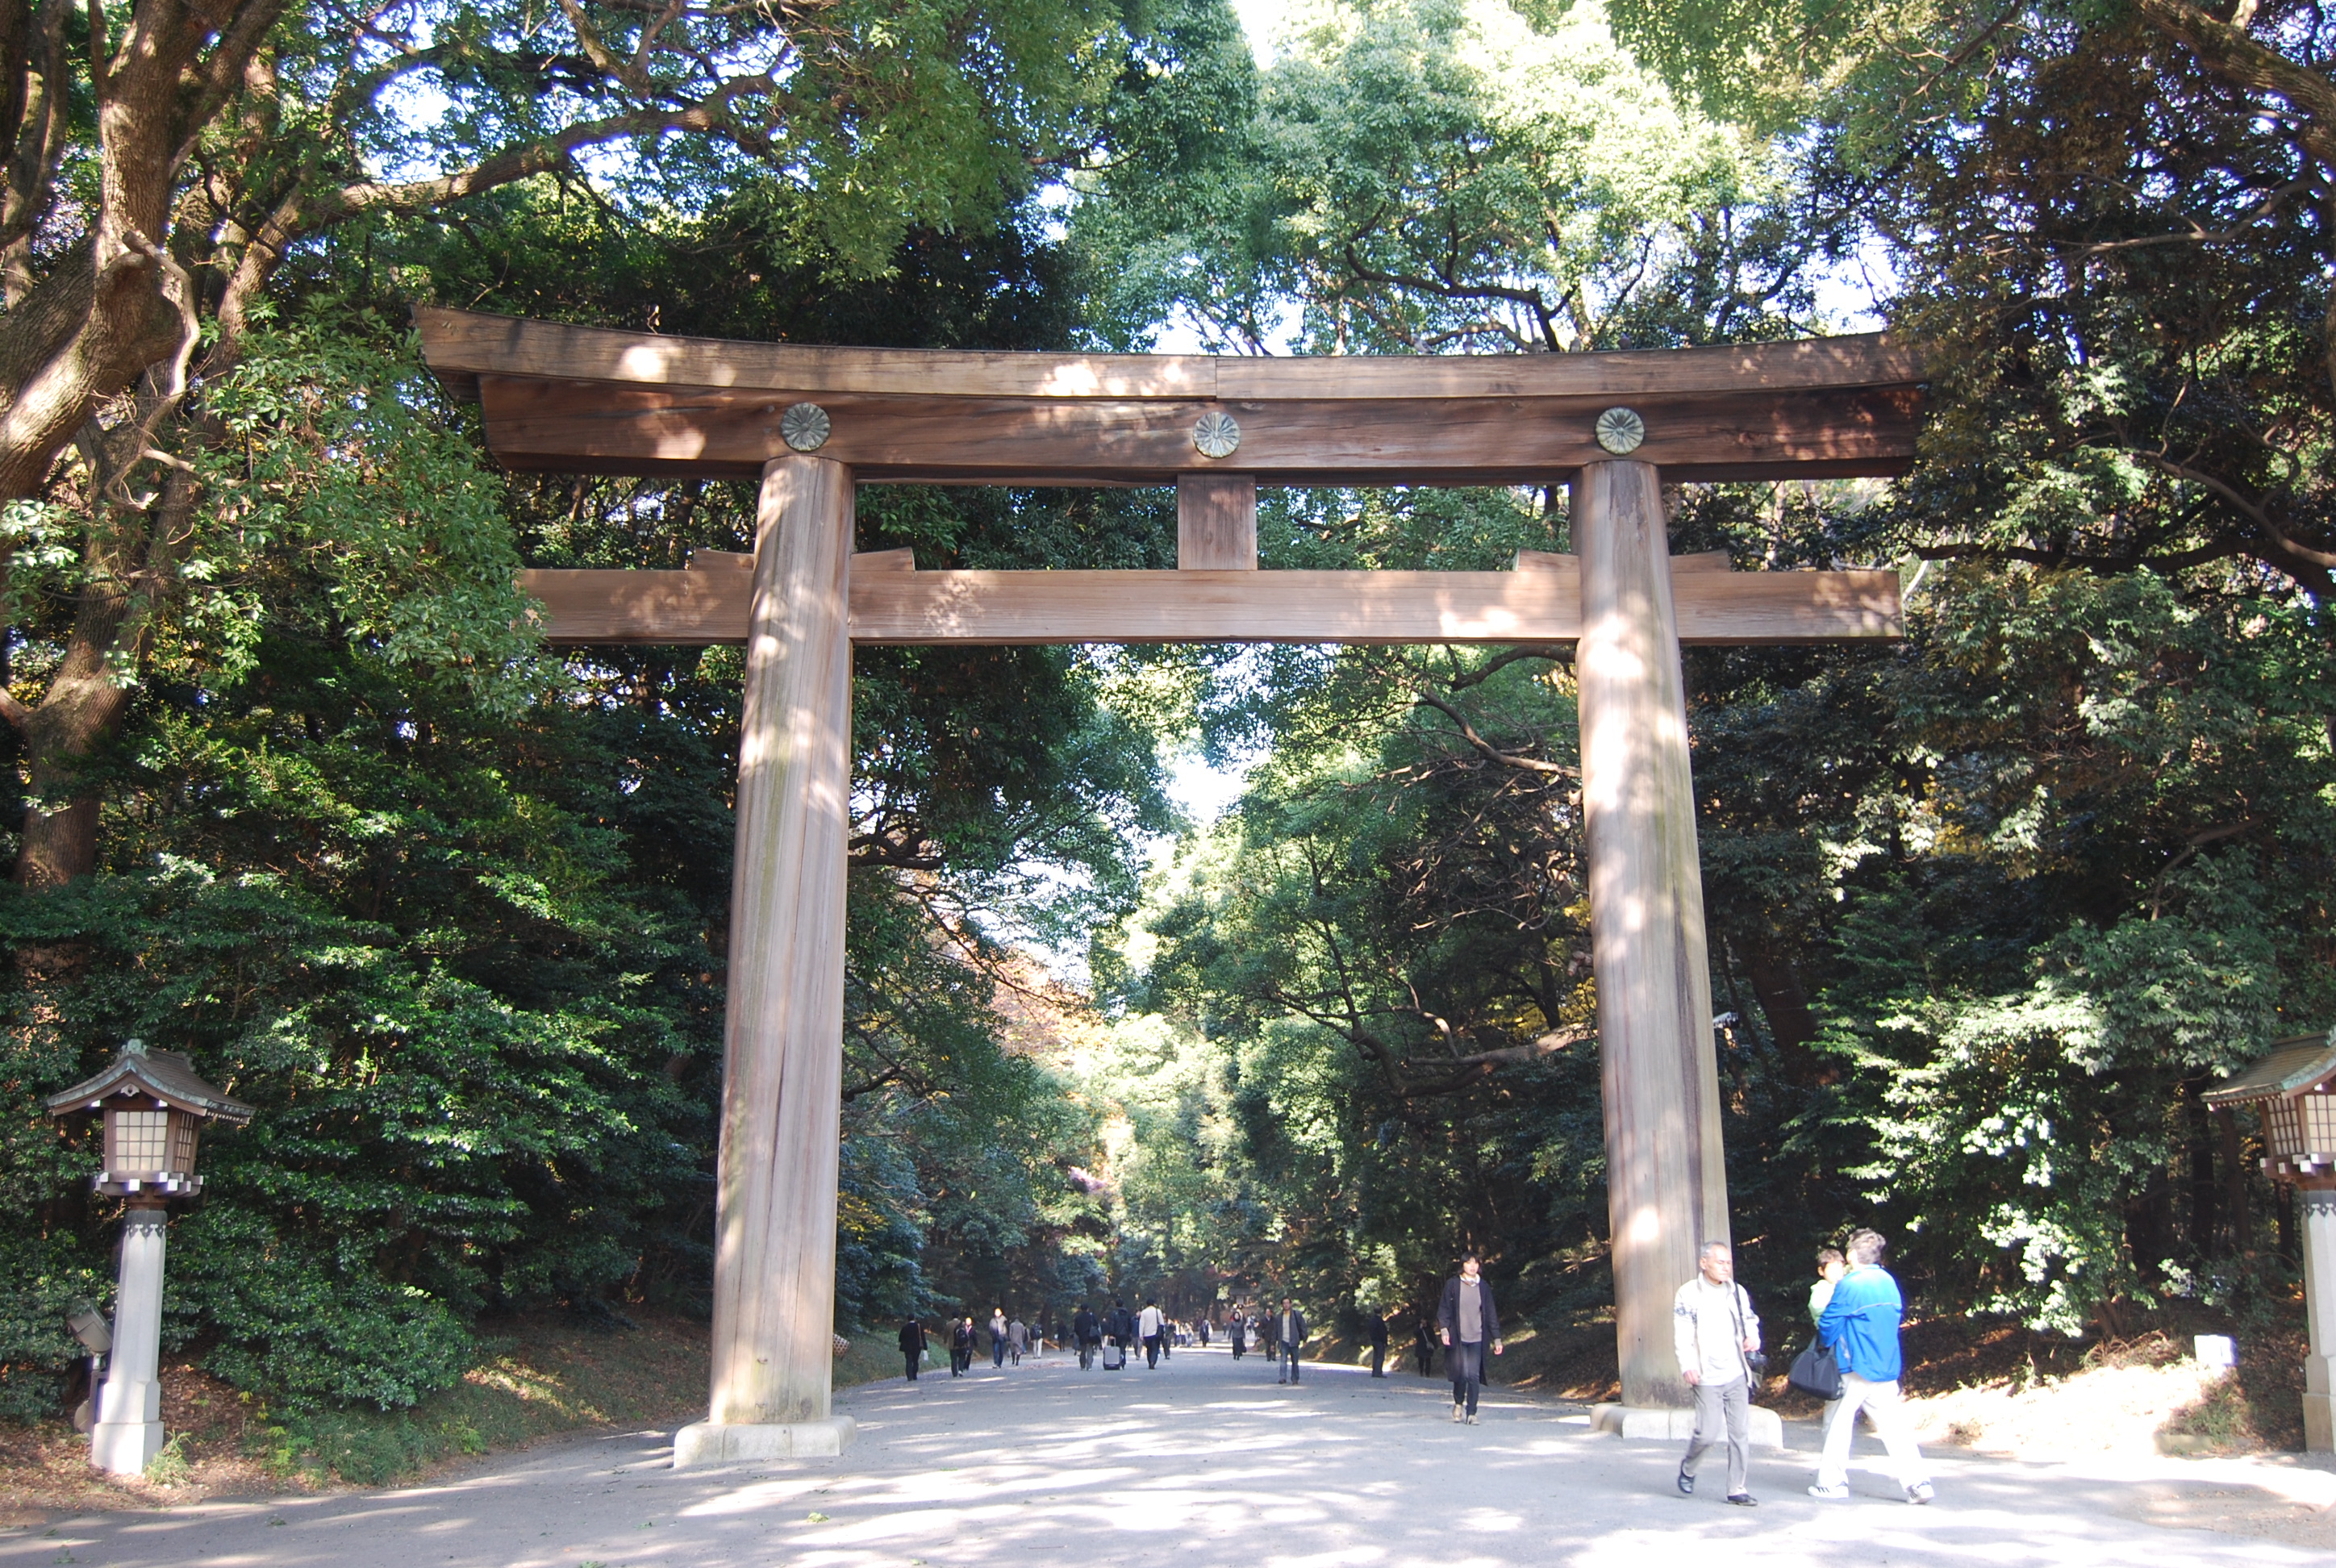 主要的神社之一,其他4个是日枝神社,靖国神社,大国魂神社和东京大神宫